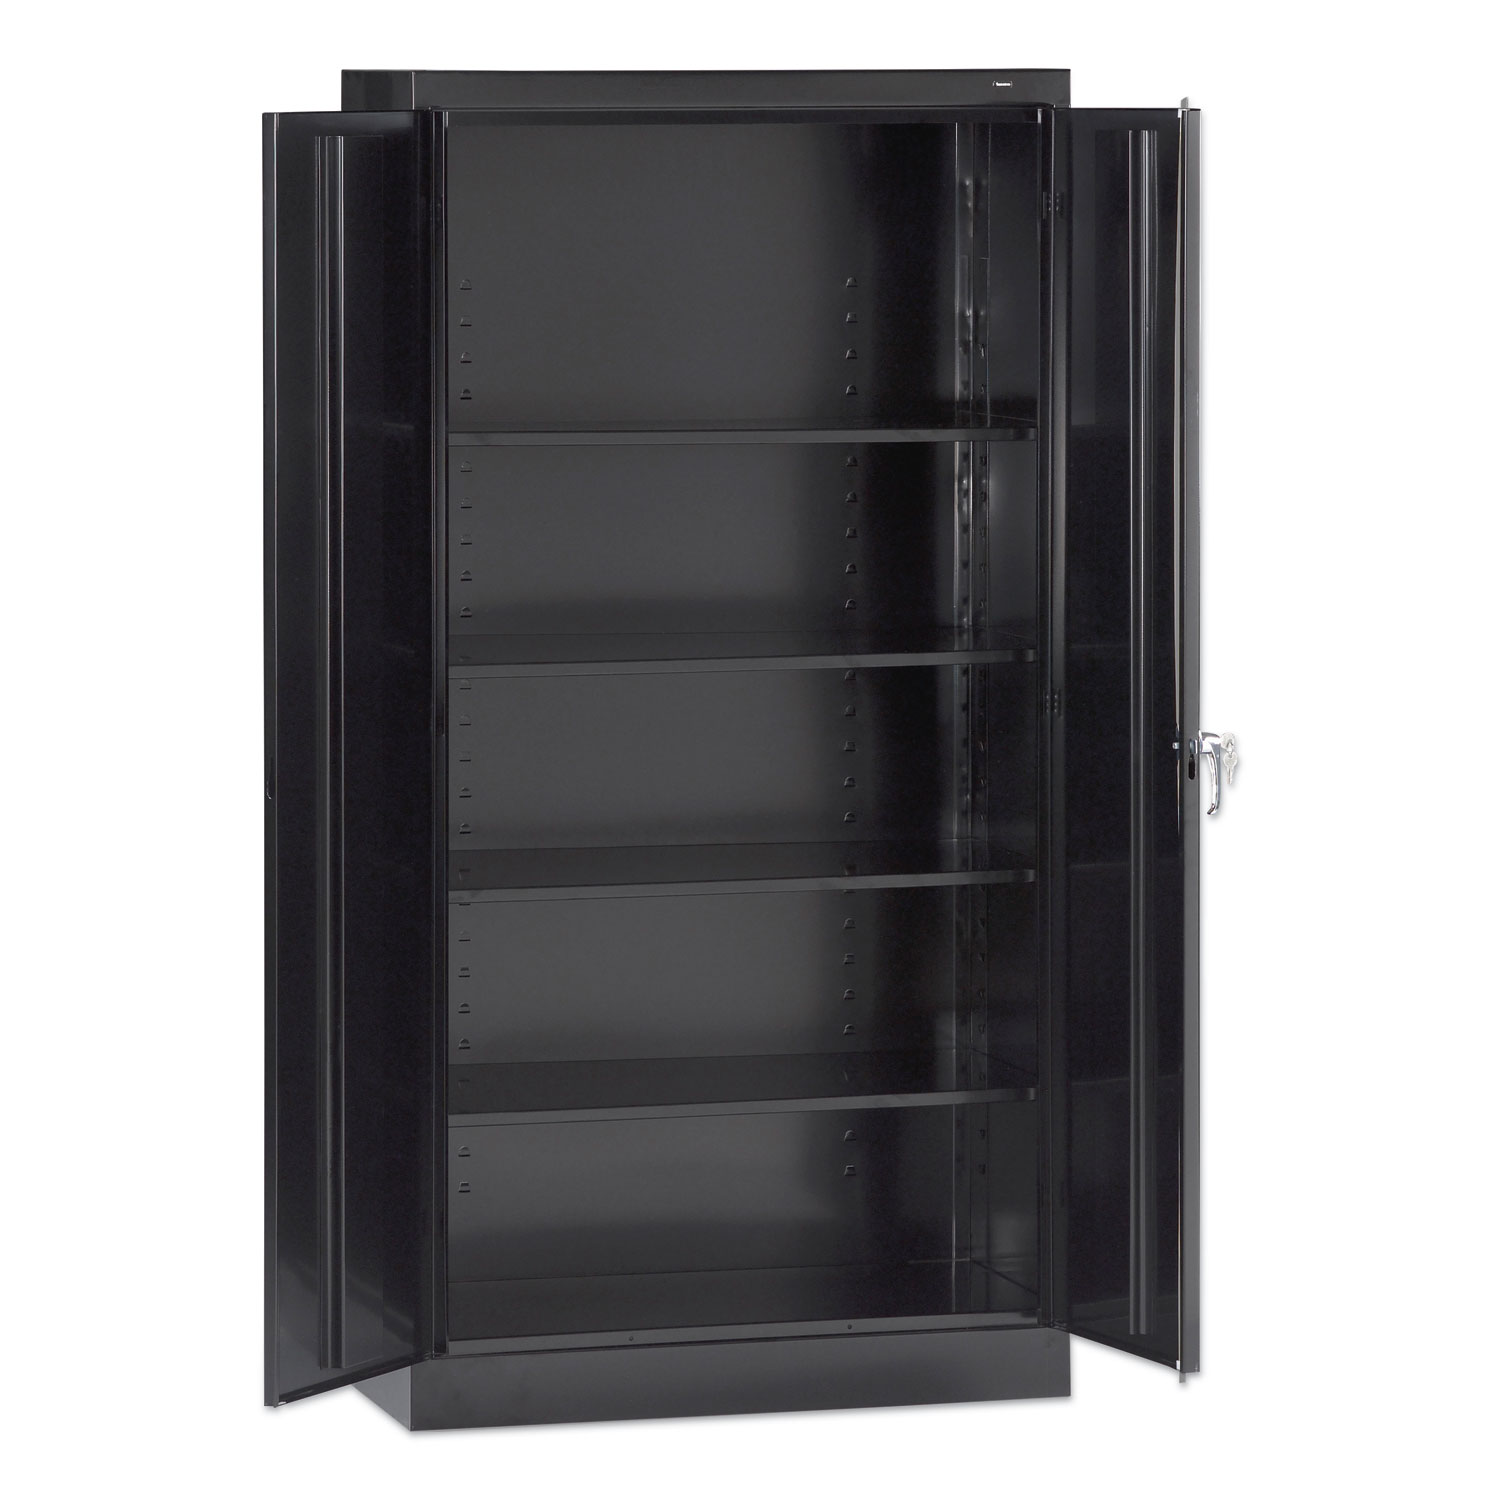 Tennsco 72 High Standard Cabinet (Assembled), 30 x 15 x 72, Black